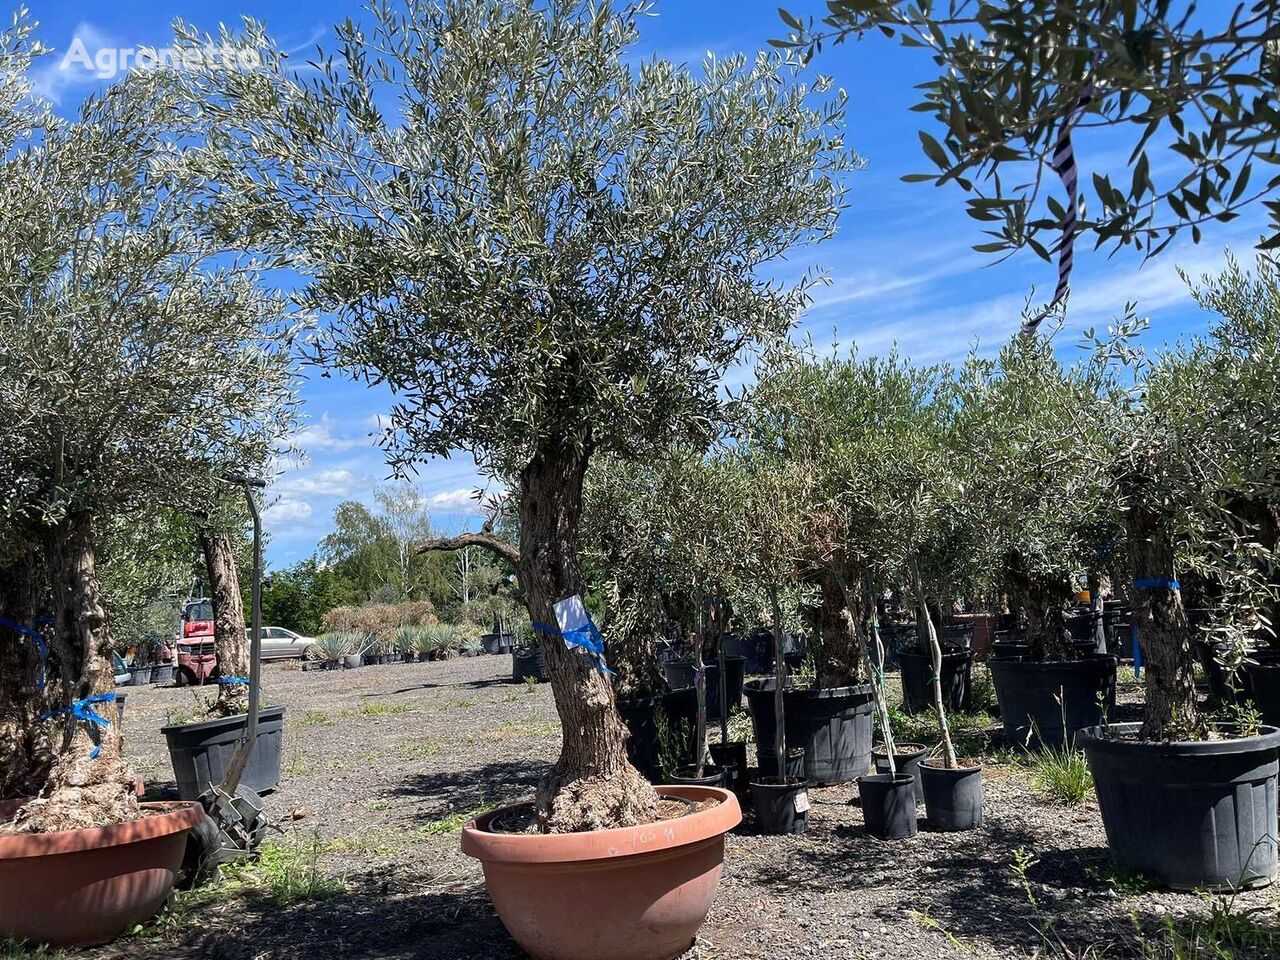 Olivenbaum (Winterhart) jonge fruitboom